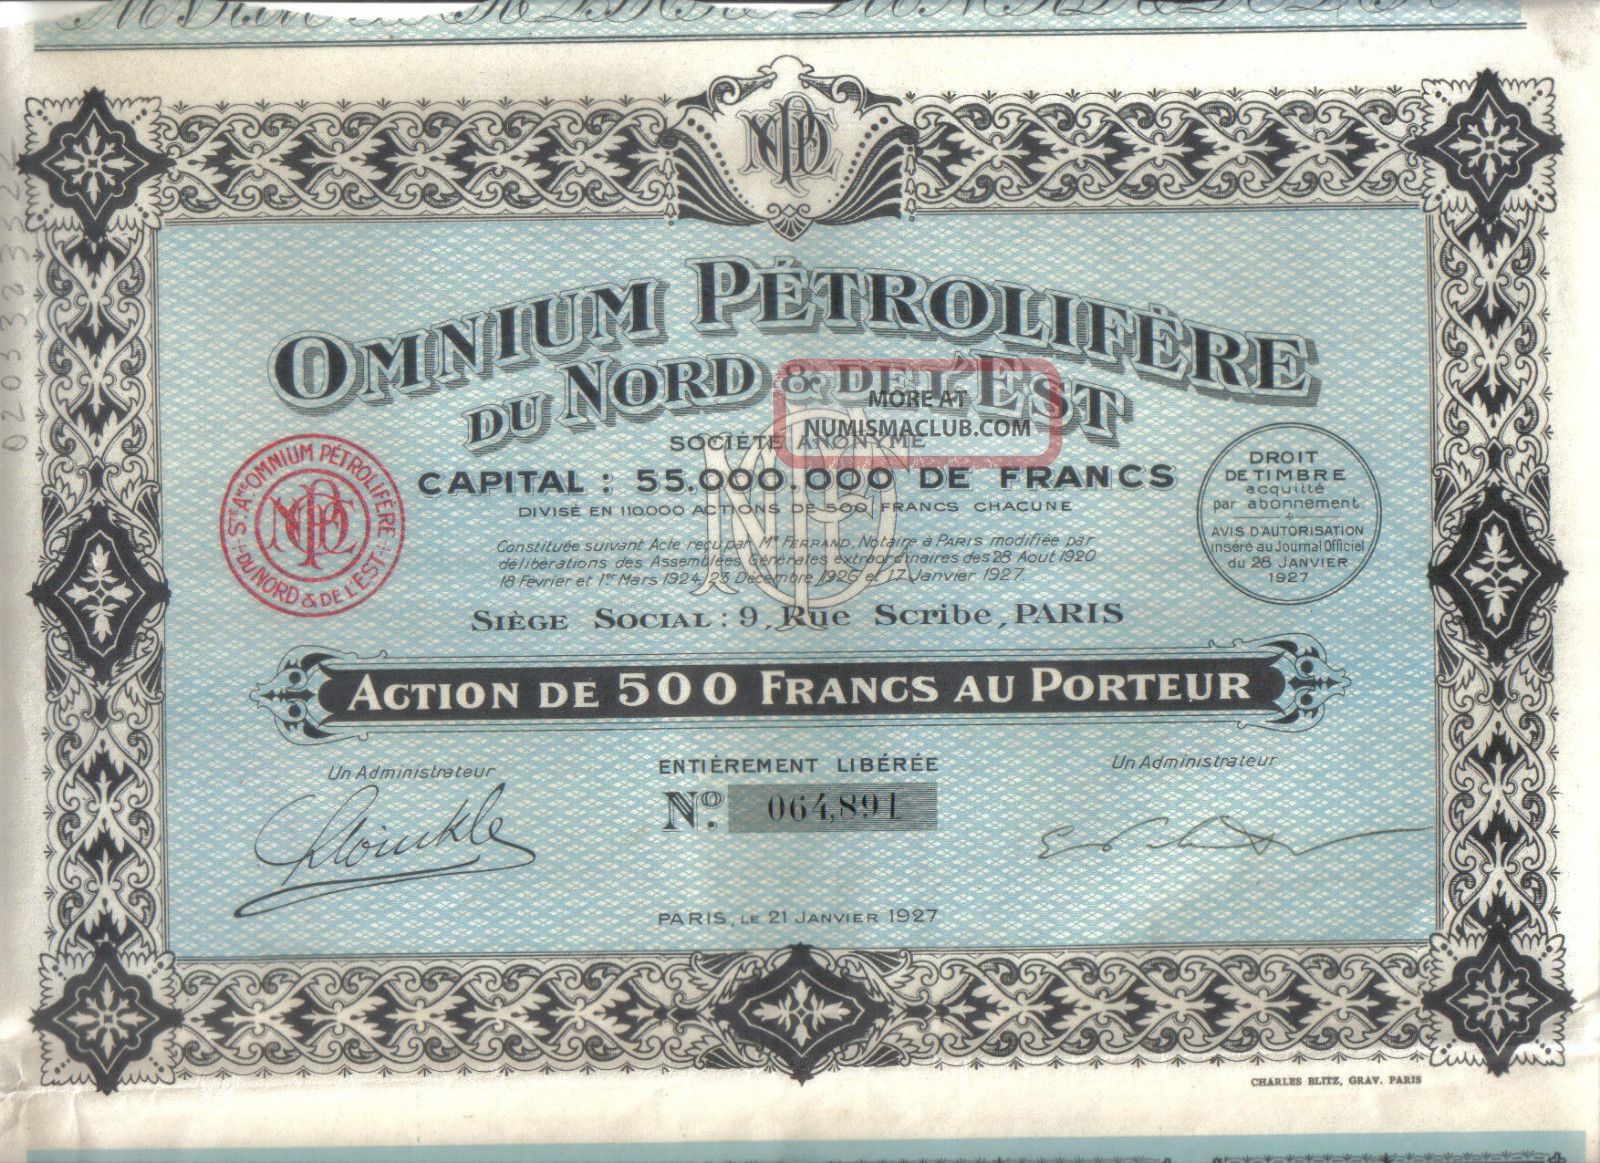 France 1927 Omnium Petrolifere Nord & Est Oil 500 Francs Coupons Uncancelled World photo